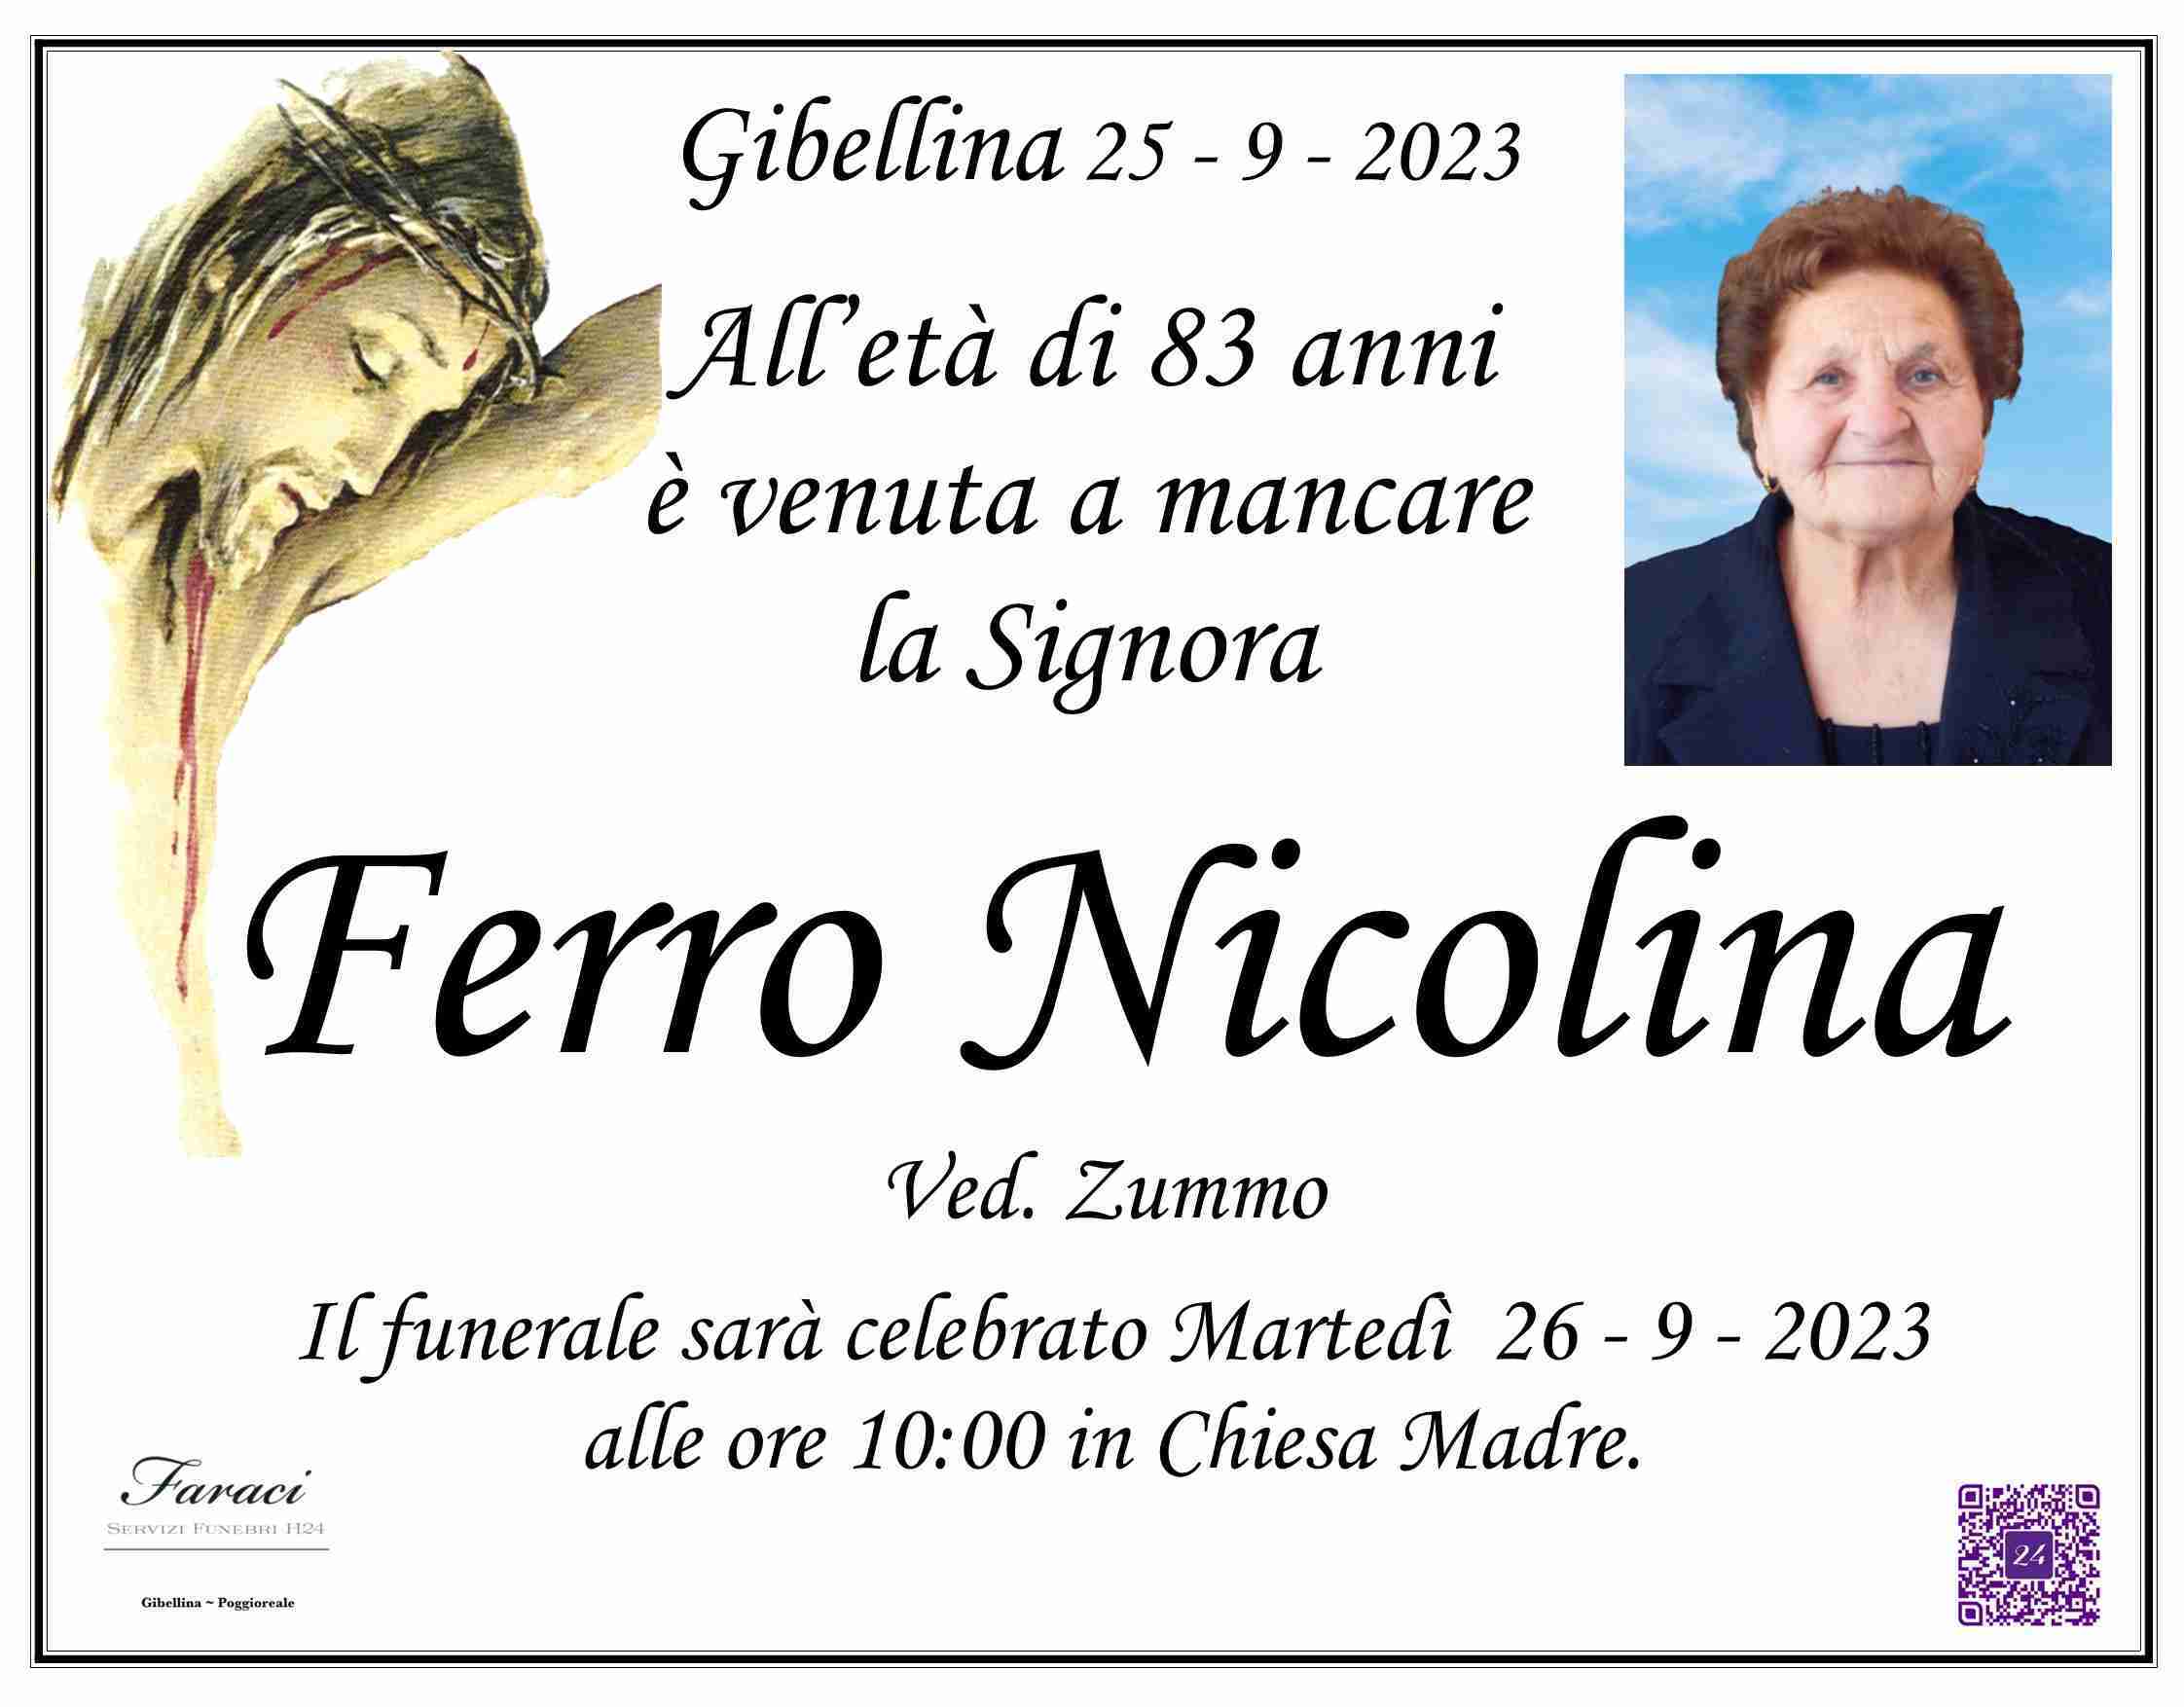 Nicolina Ferro